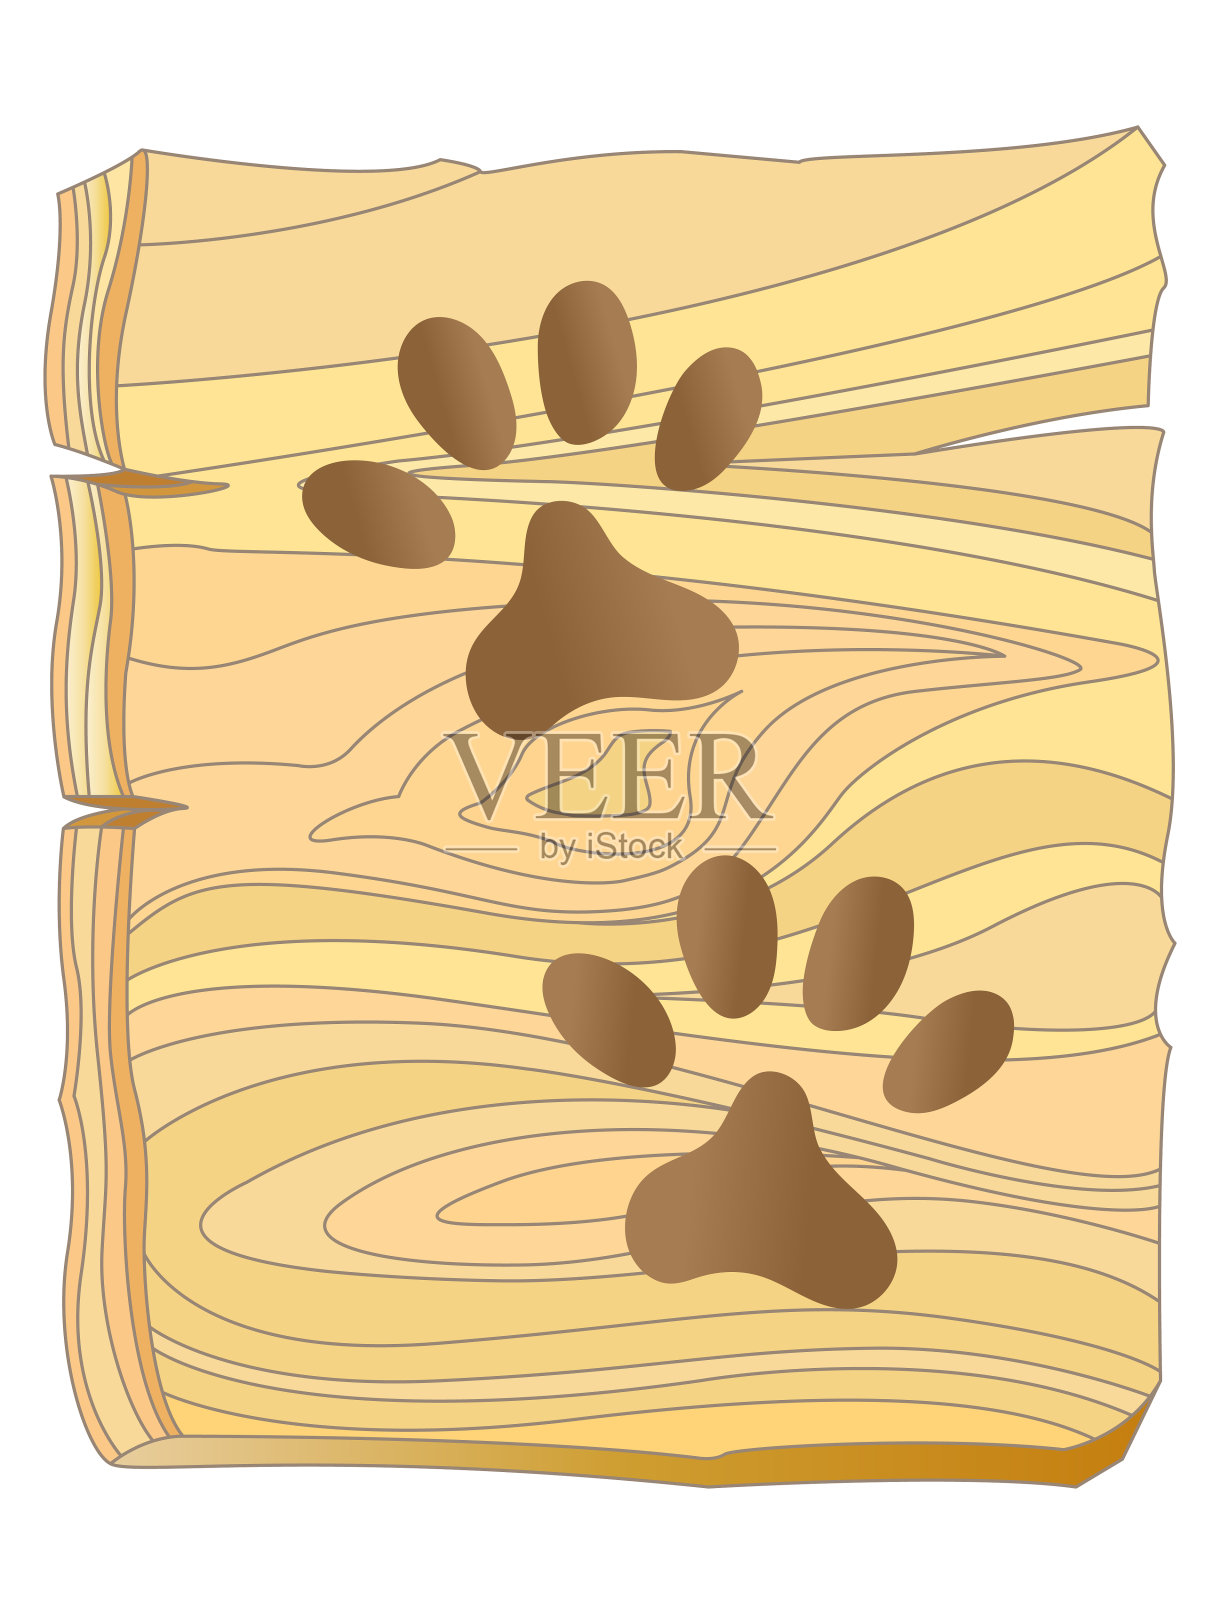 木板上的狗爪印。插画图片素材